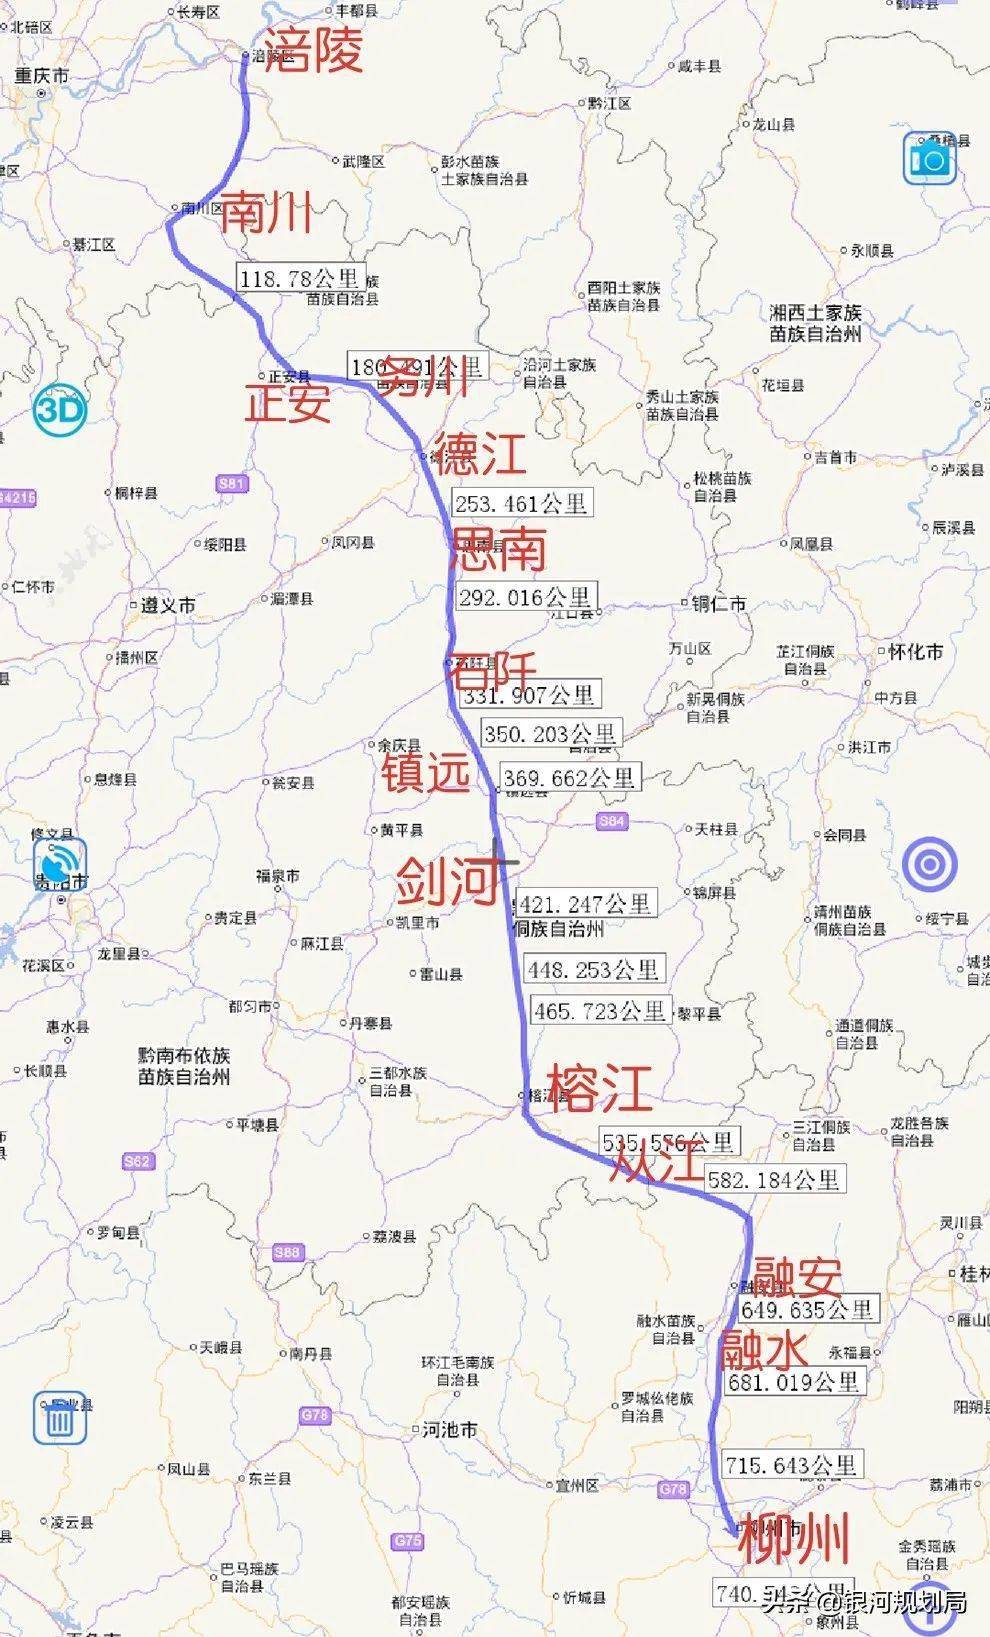 涪陵至柳州建成后贵州三条铁路将实现互联互通 对黔东南而言意义重大